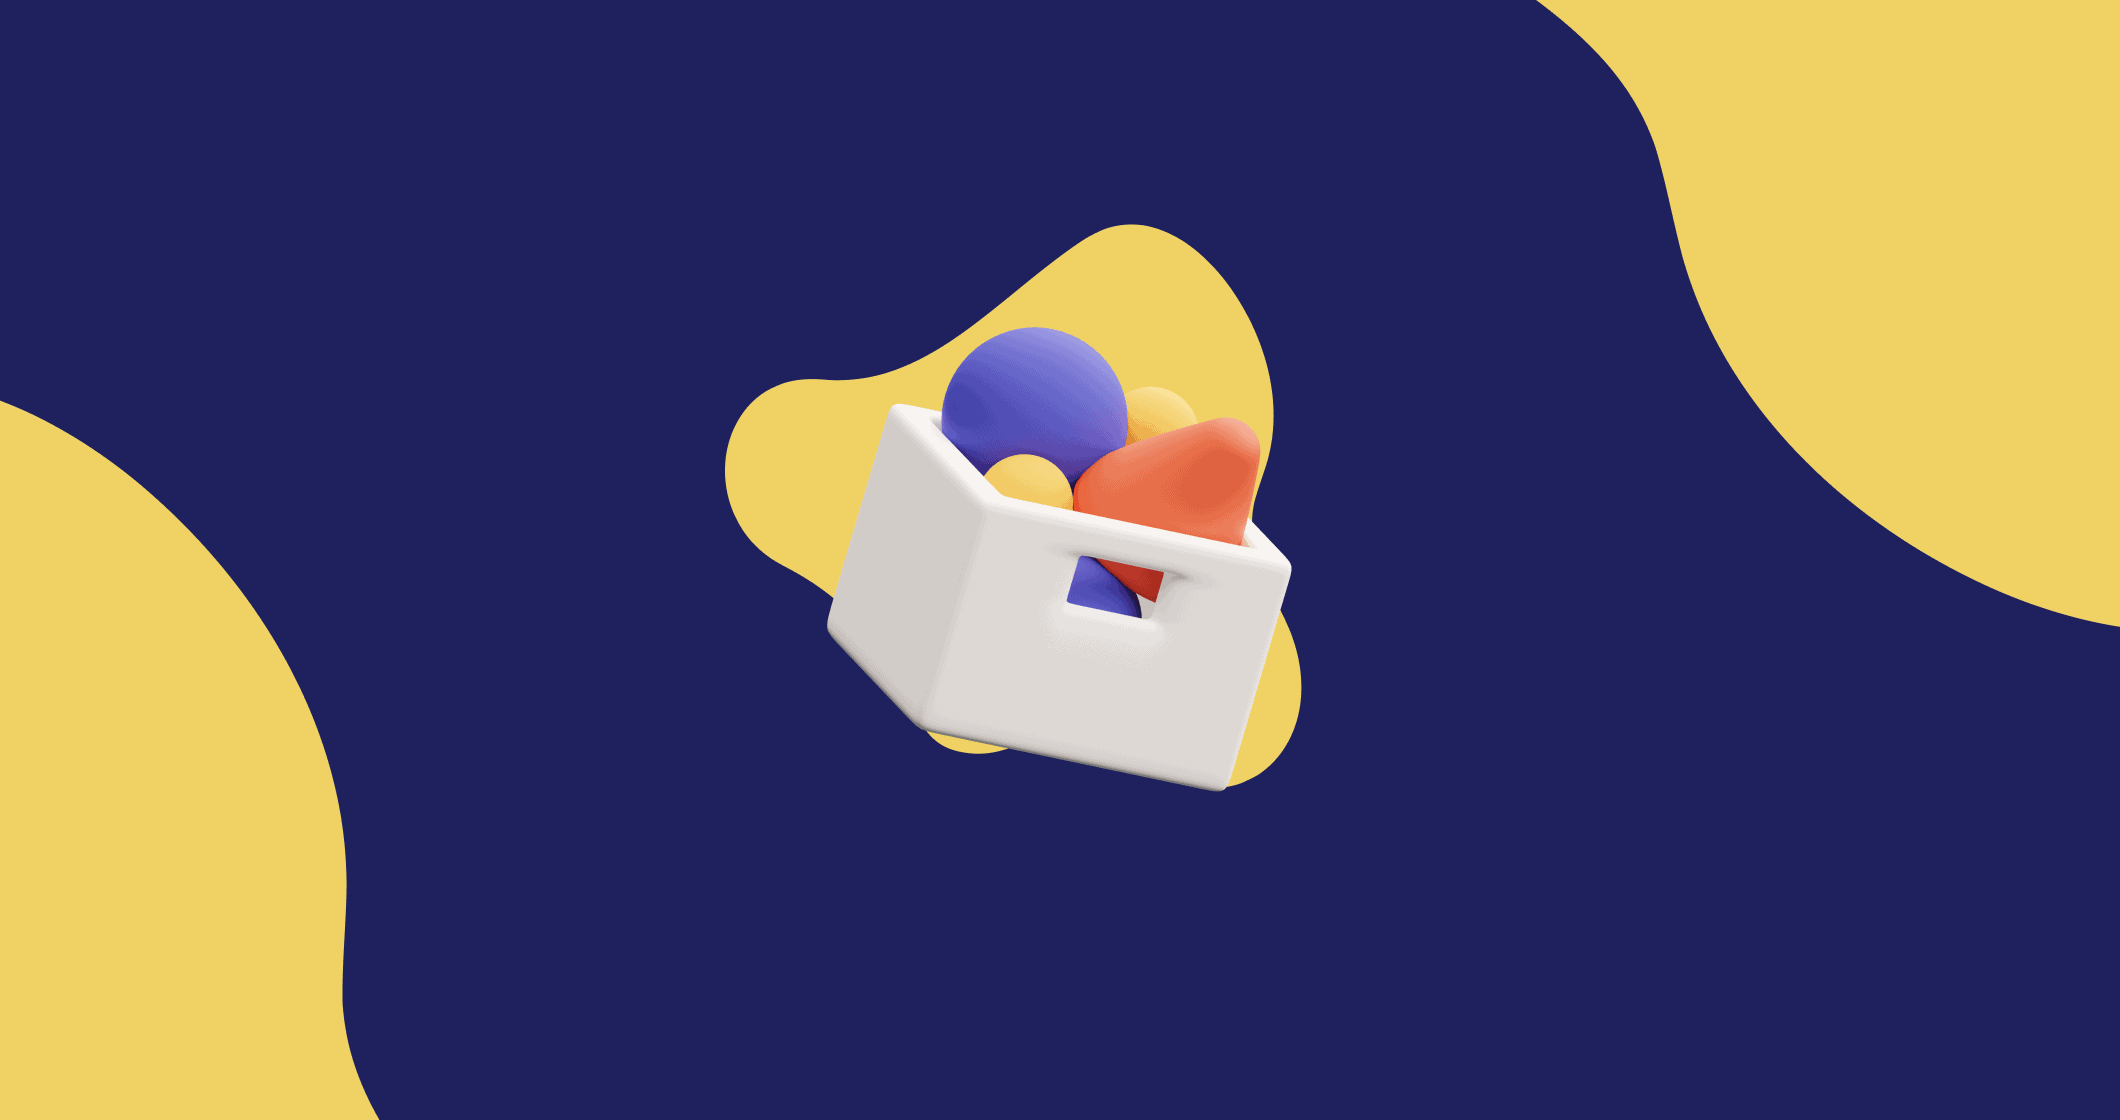 Fundo azul e amarelo com um ovo em uma sacola, representando um mapa conceitual.